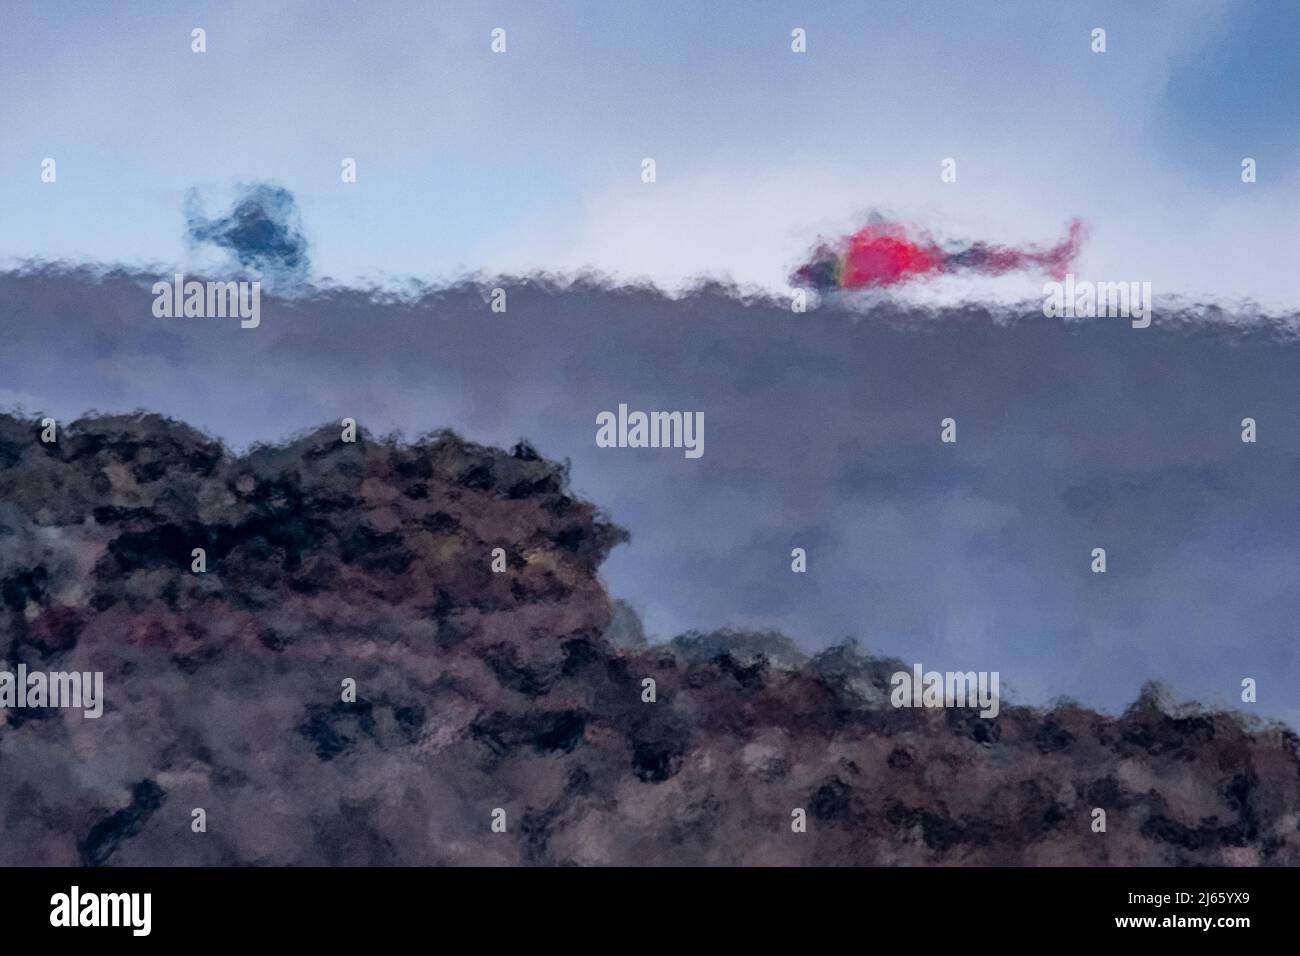 Zwei Hubschrauben stehen auf dem Bergrücken des Fagradalsfjall am Vulkanausbruch, die Luft flimmert durch die Hitze der Lavaströme. Stock Photo